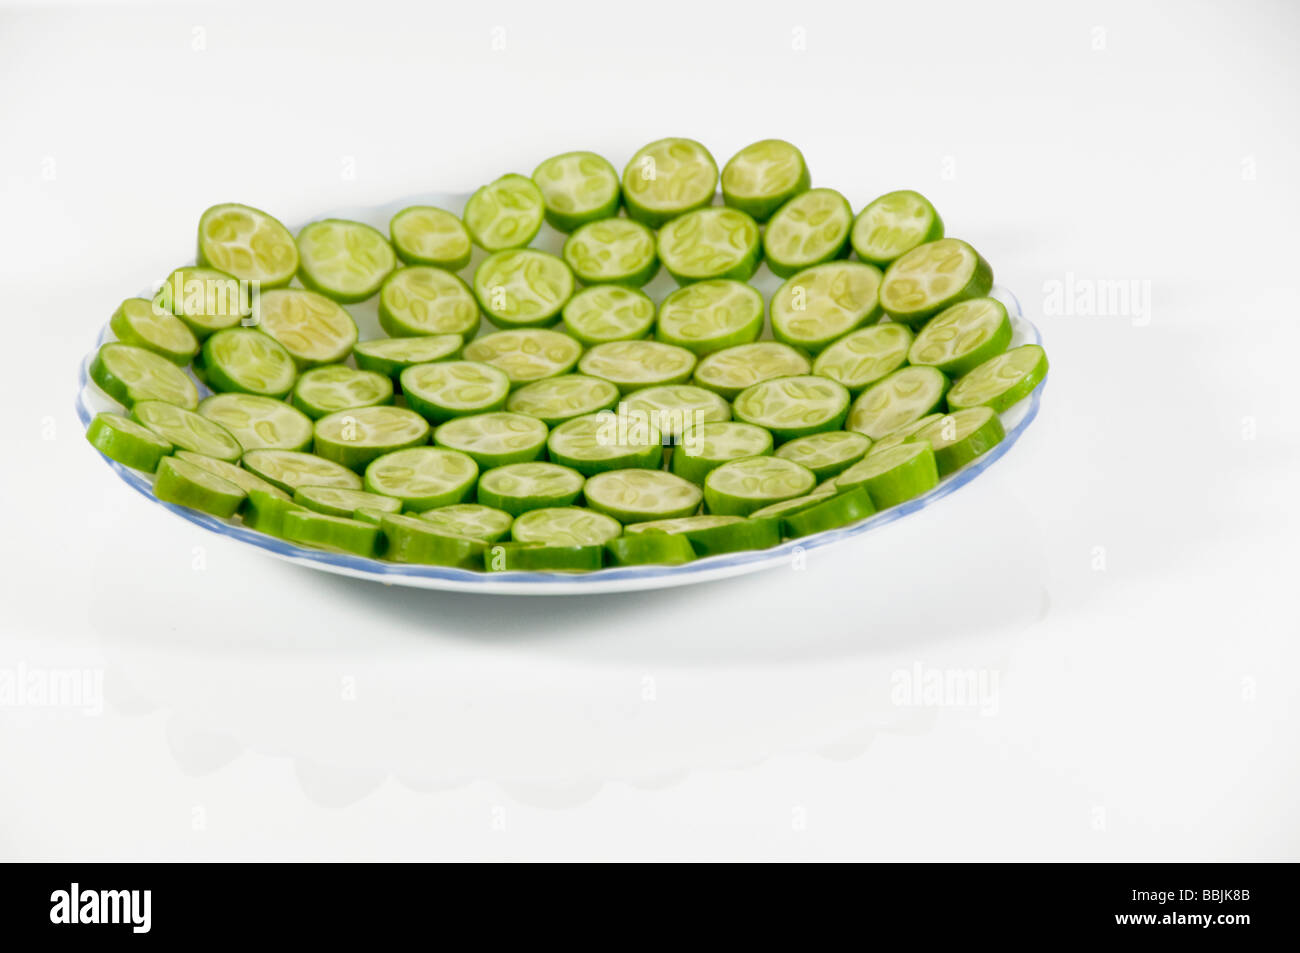 Tindora - Indian cucumber Stock Photo